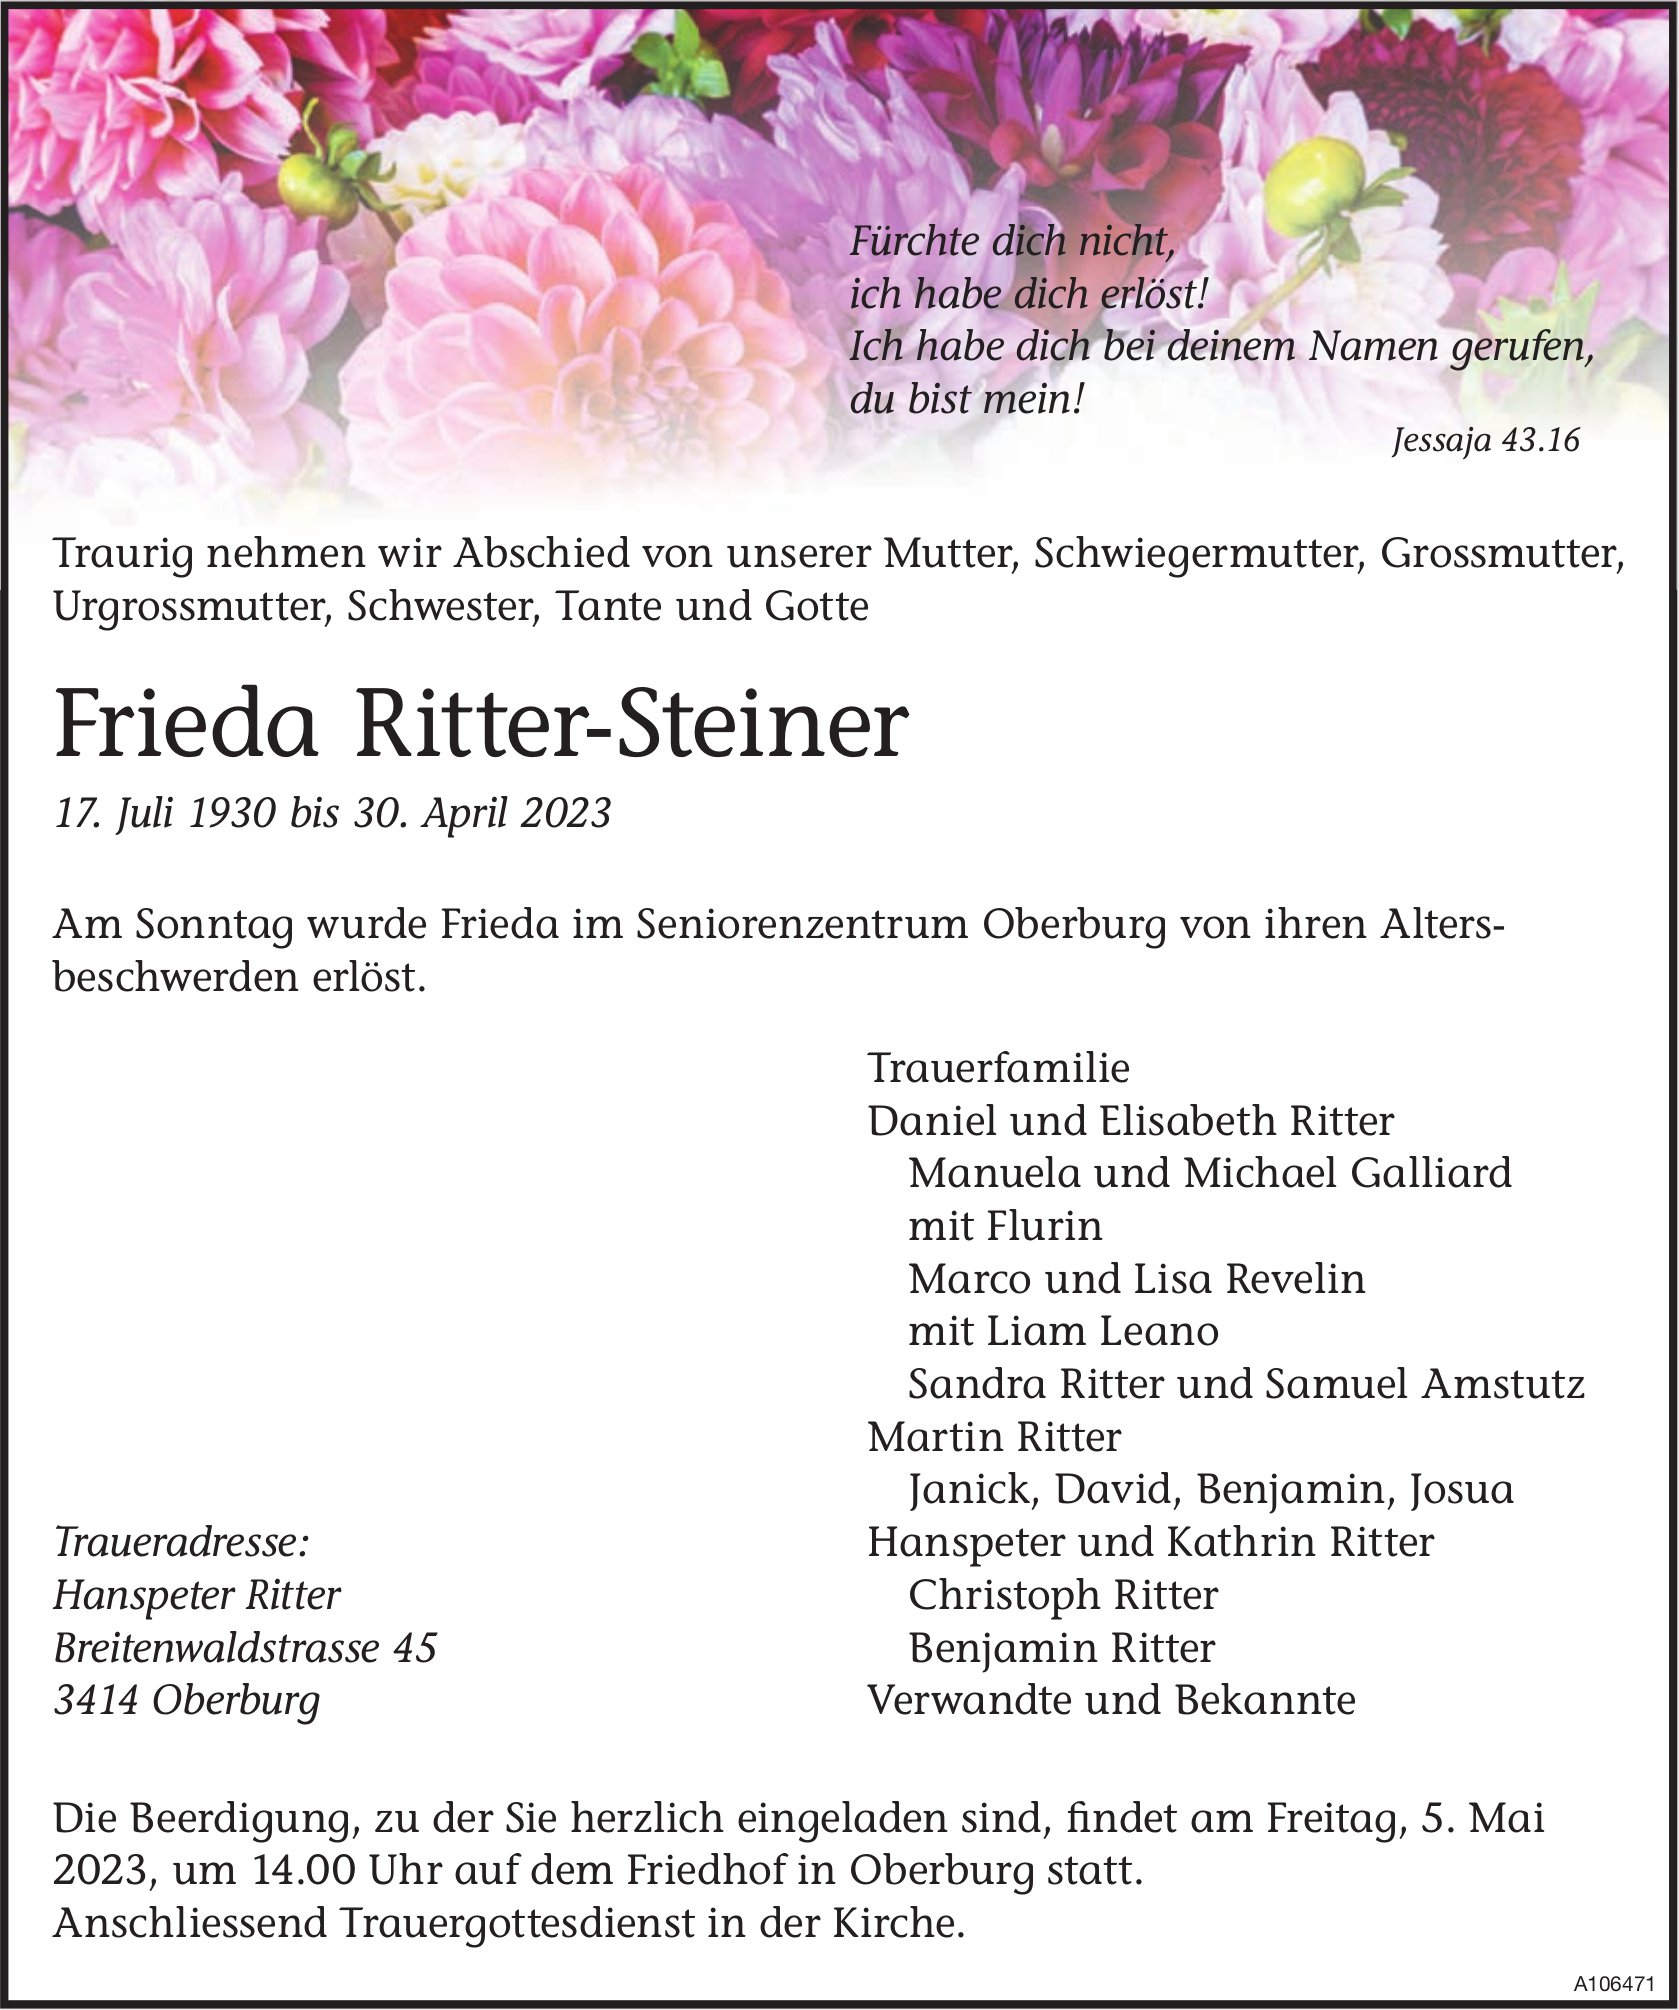 Frieda Ritter-Steiner, April 2023 / TA